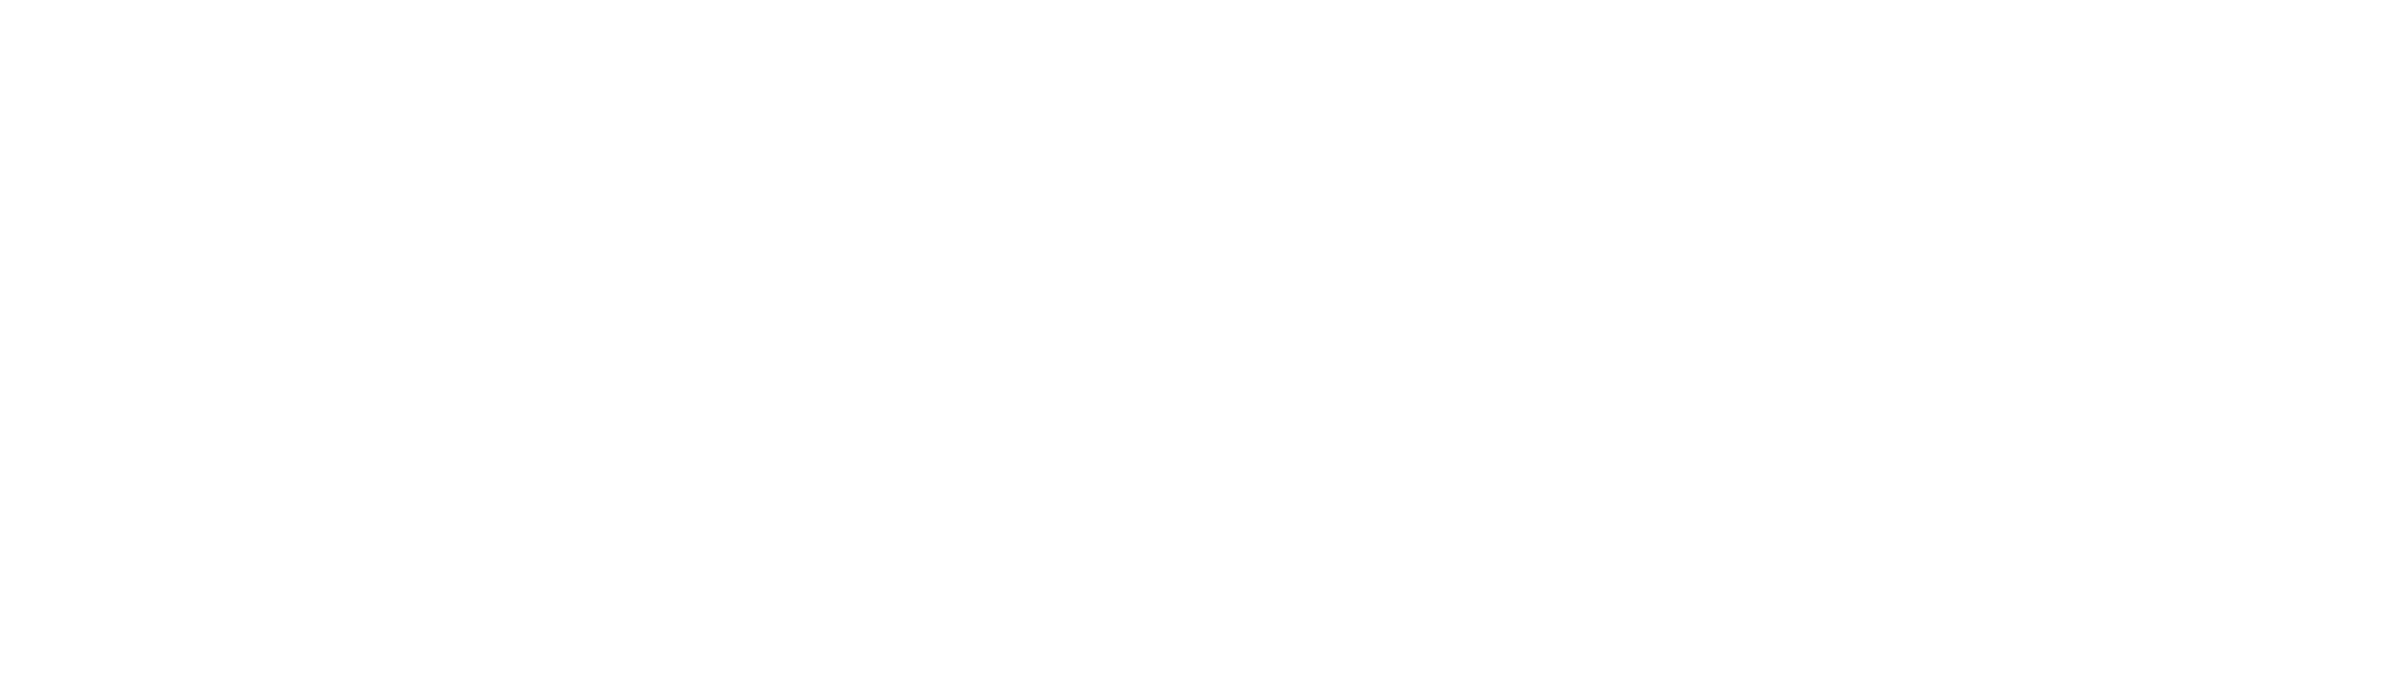 Yik Yak Black and White Logo - Yik Yak Logo PNG Transparent & SVG Vector - Freebie Supply